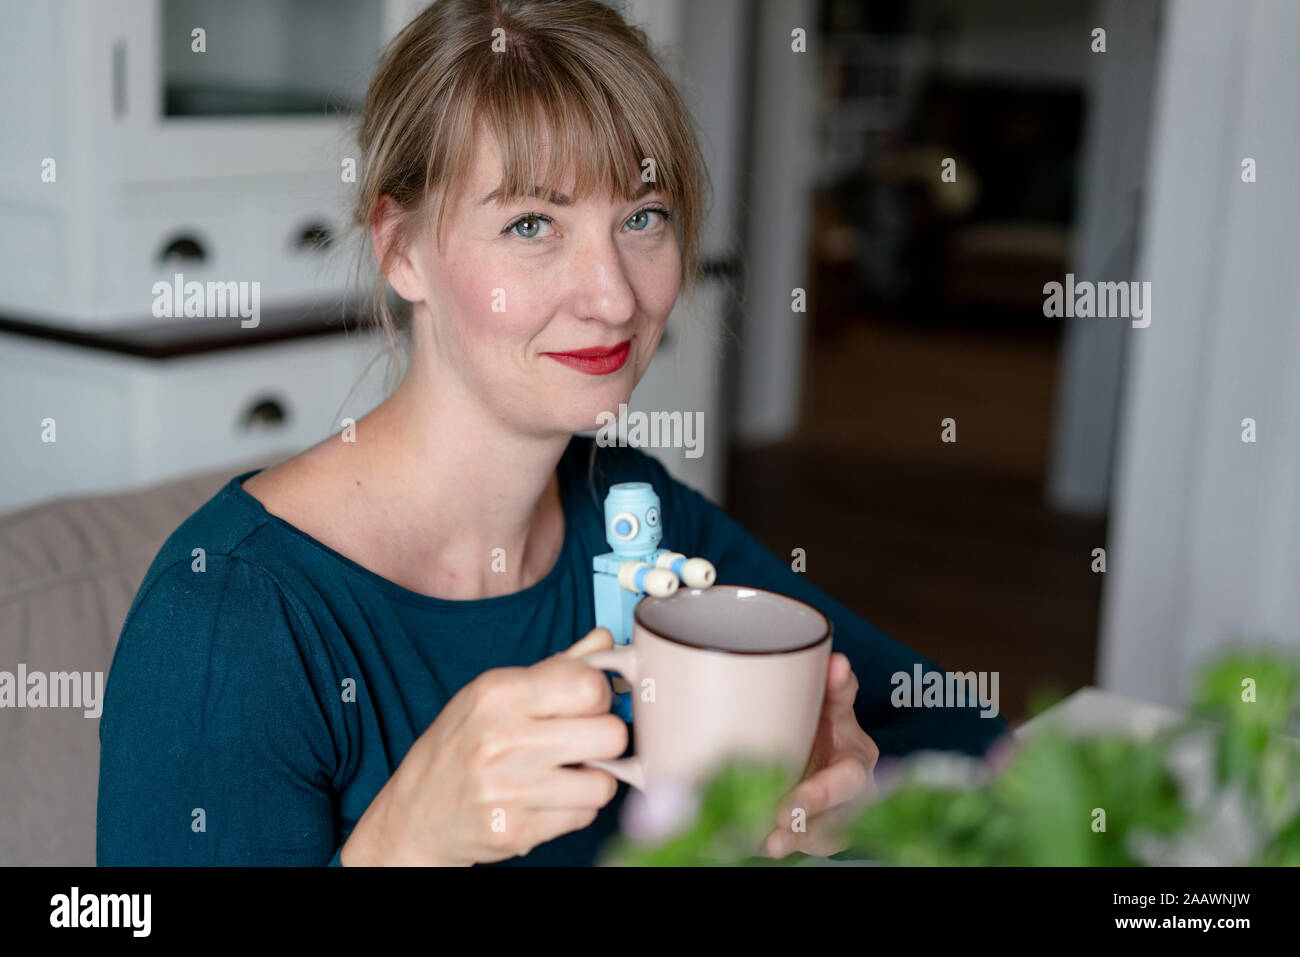 Portrait of smiling woman holding mug avec petit robot Banque D'Images